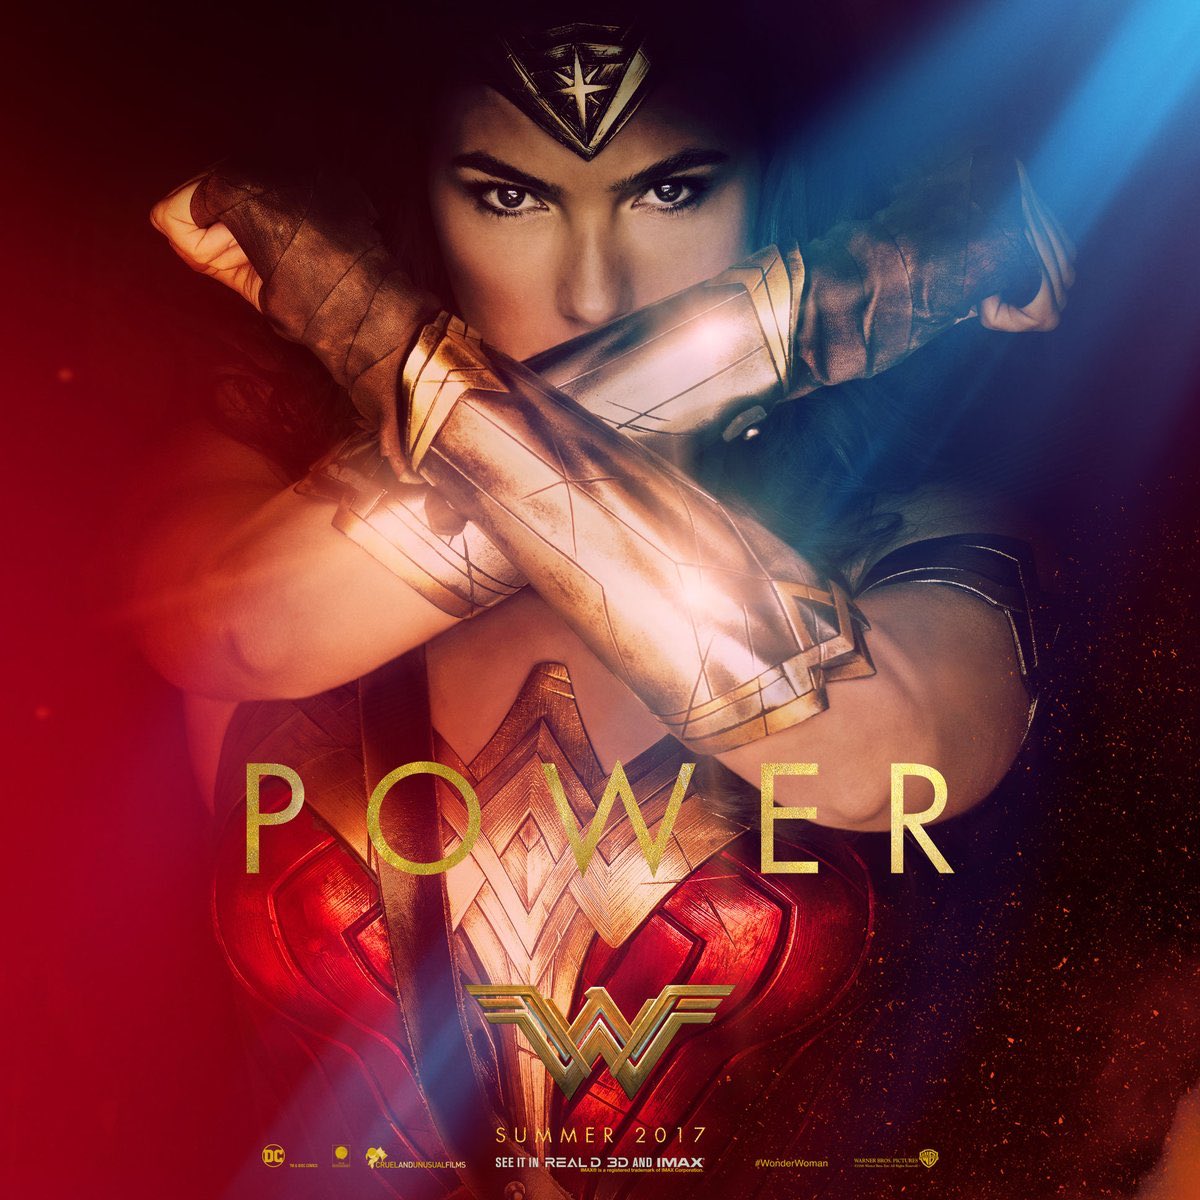 Bluray Film Wonder Woman 2017 Watch Online